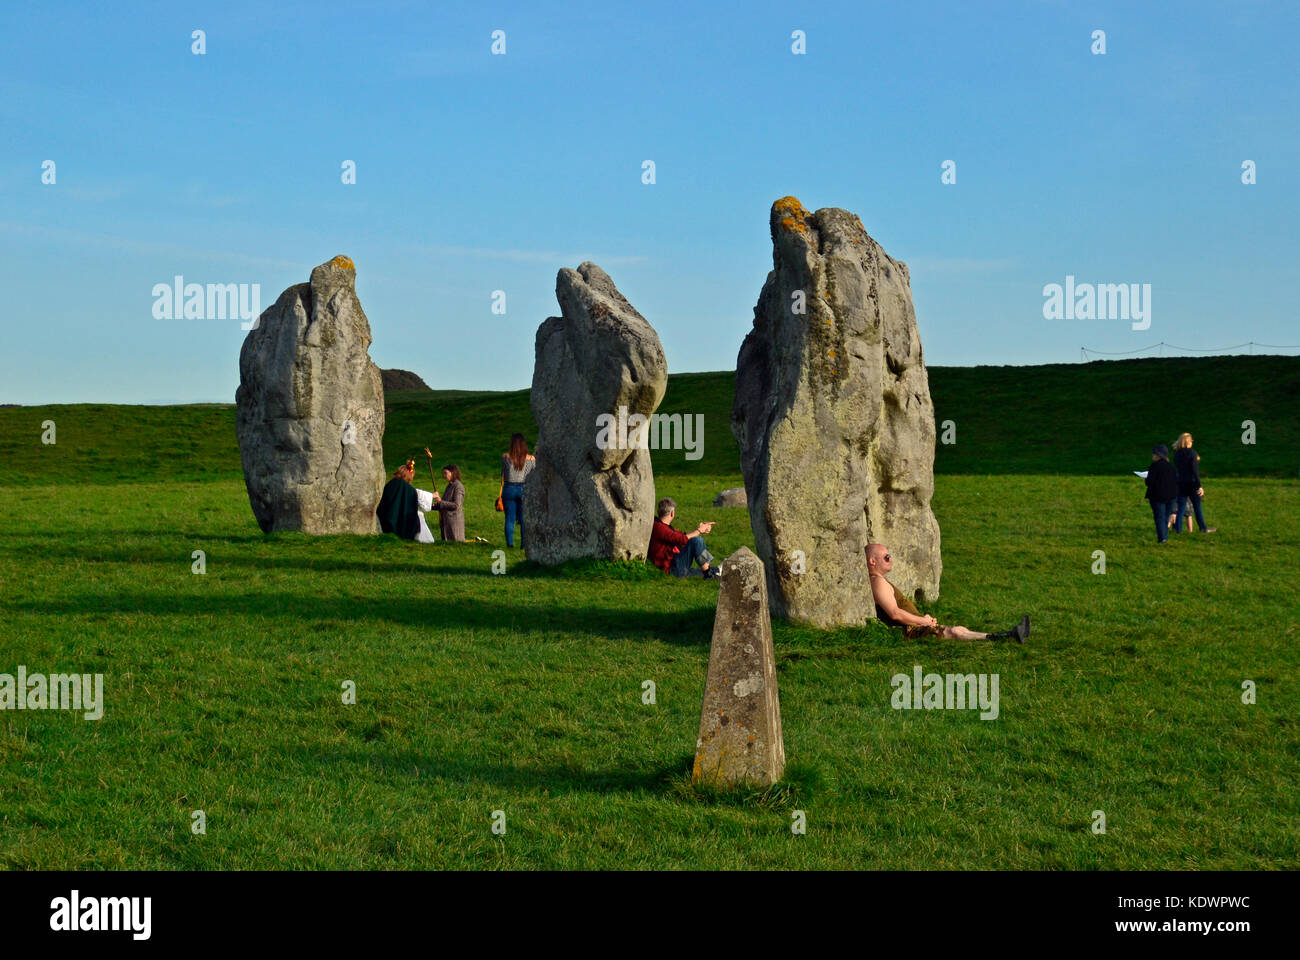 Le cercle de pierres d'Avebury Henge, Wiltshire Banque D'Images